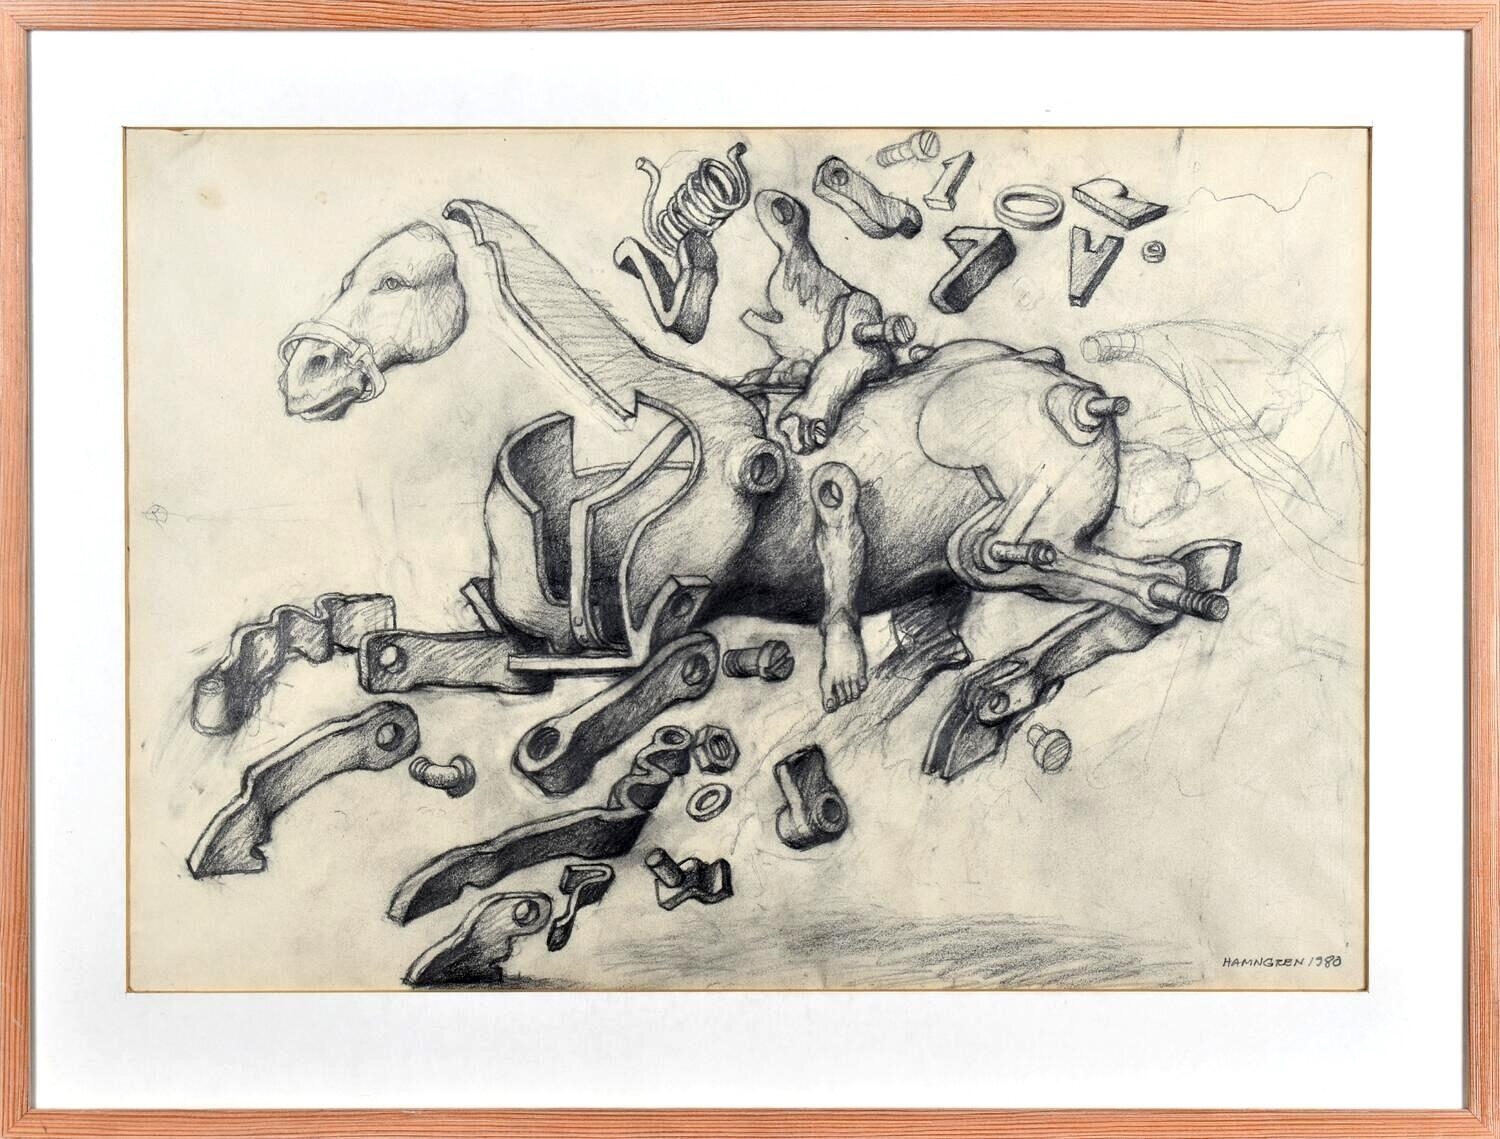 Sketch of mechanical horse - Hans Hamngren